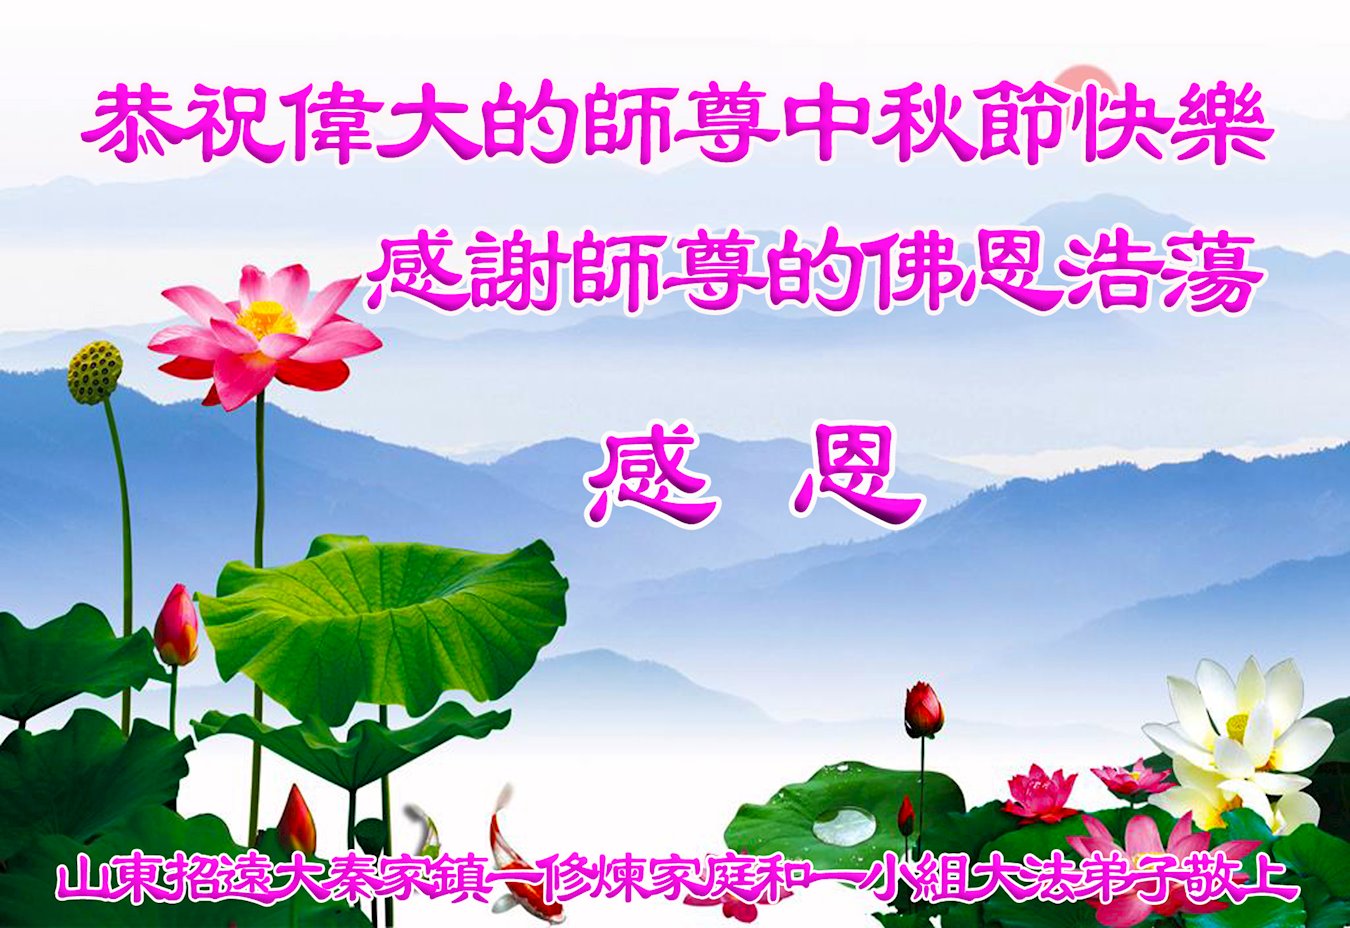 Image for article Après avoir surmonté la persécution pendant deux décennies, les pratiquants de Falun Dafa remercient Maître Li Hongzhi pour son rôle de guide et lui souhaitent une joyeuse fête de la Lune